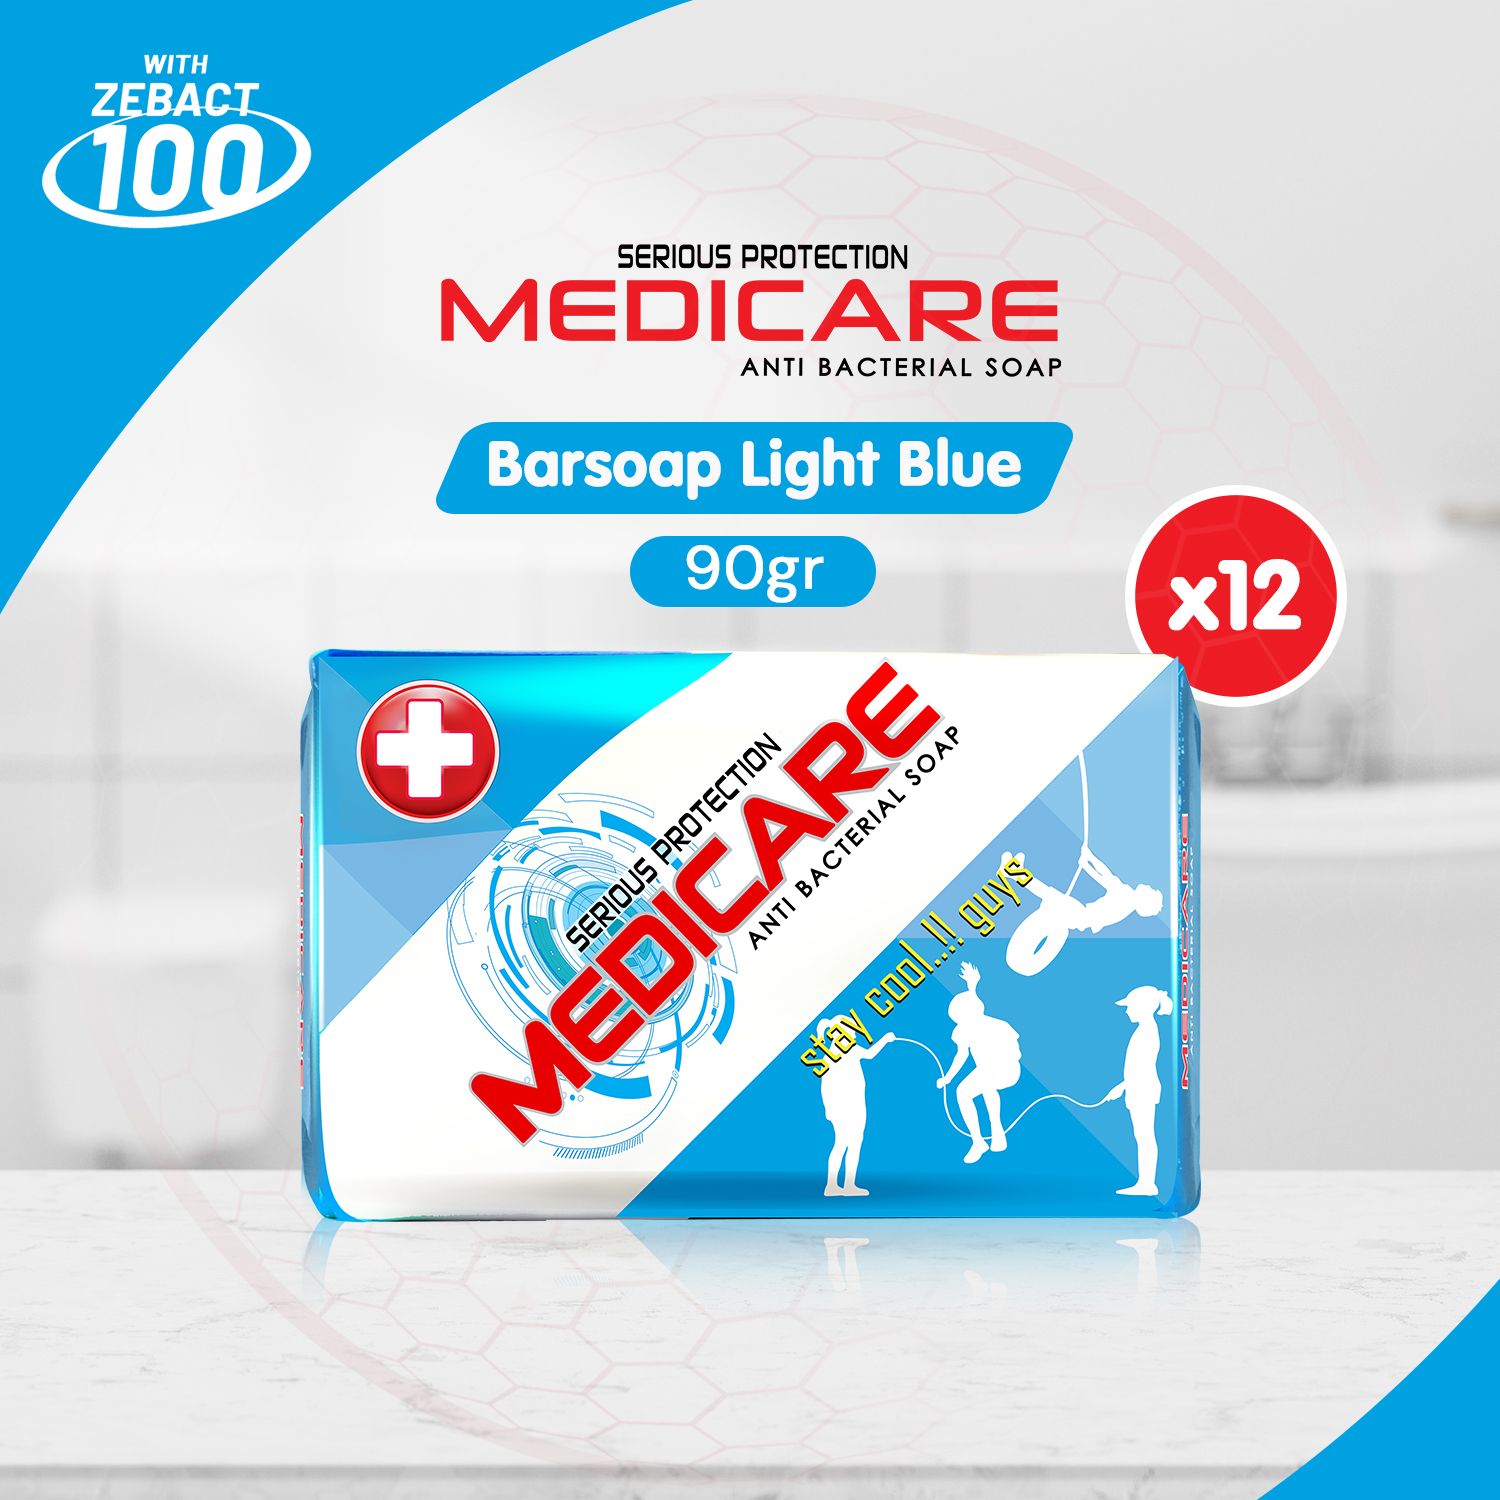 MEDICARE Sabun Antibakteri Light Blue 90g (12 pcs) - 1